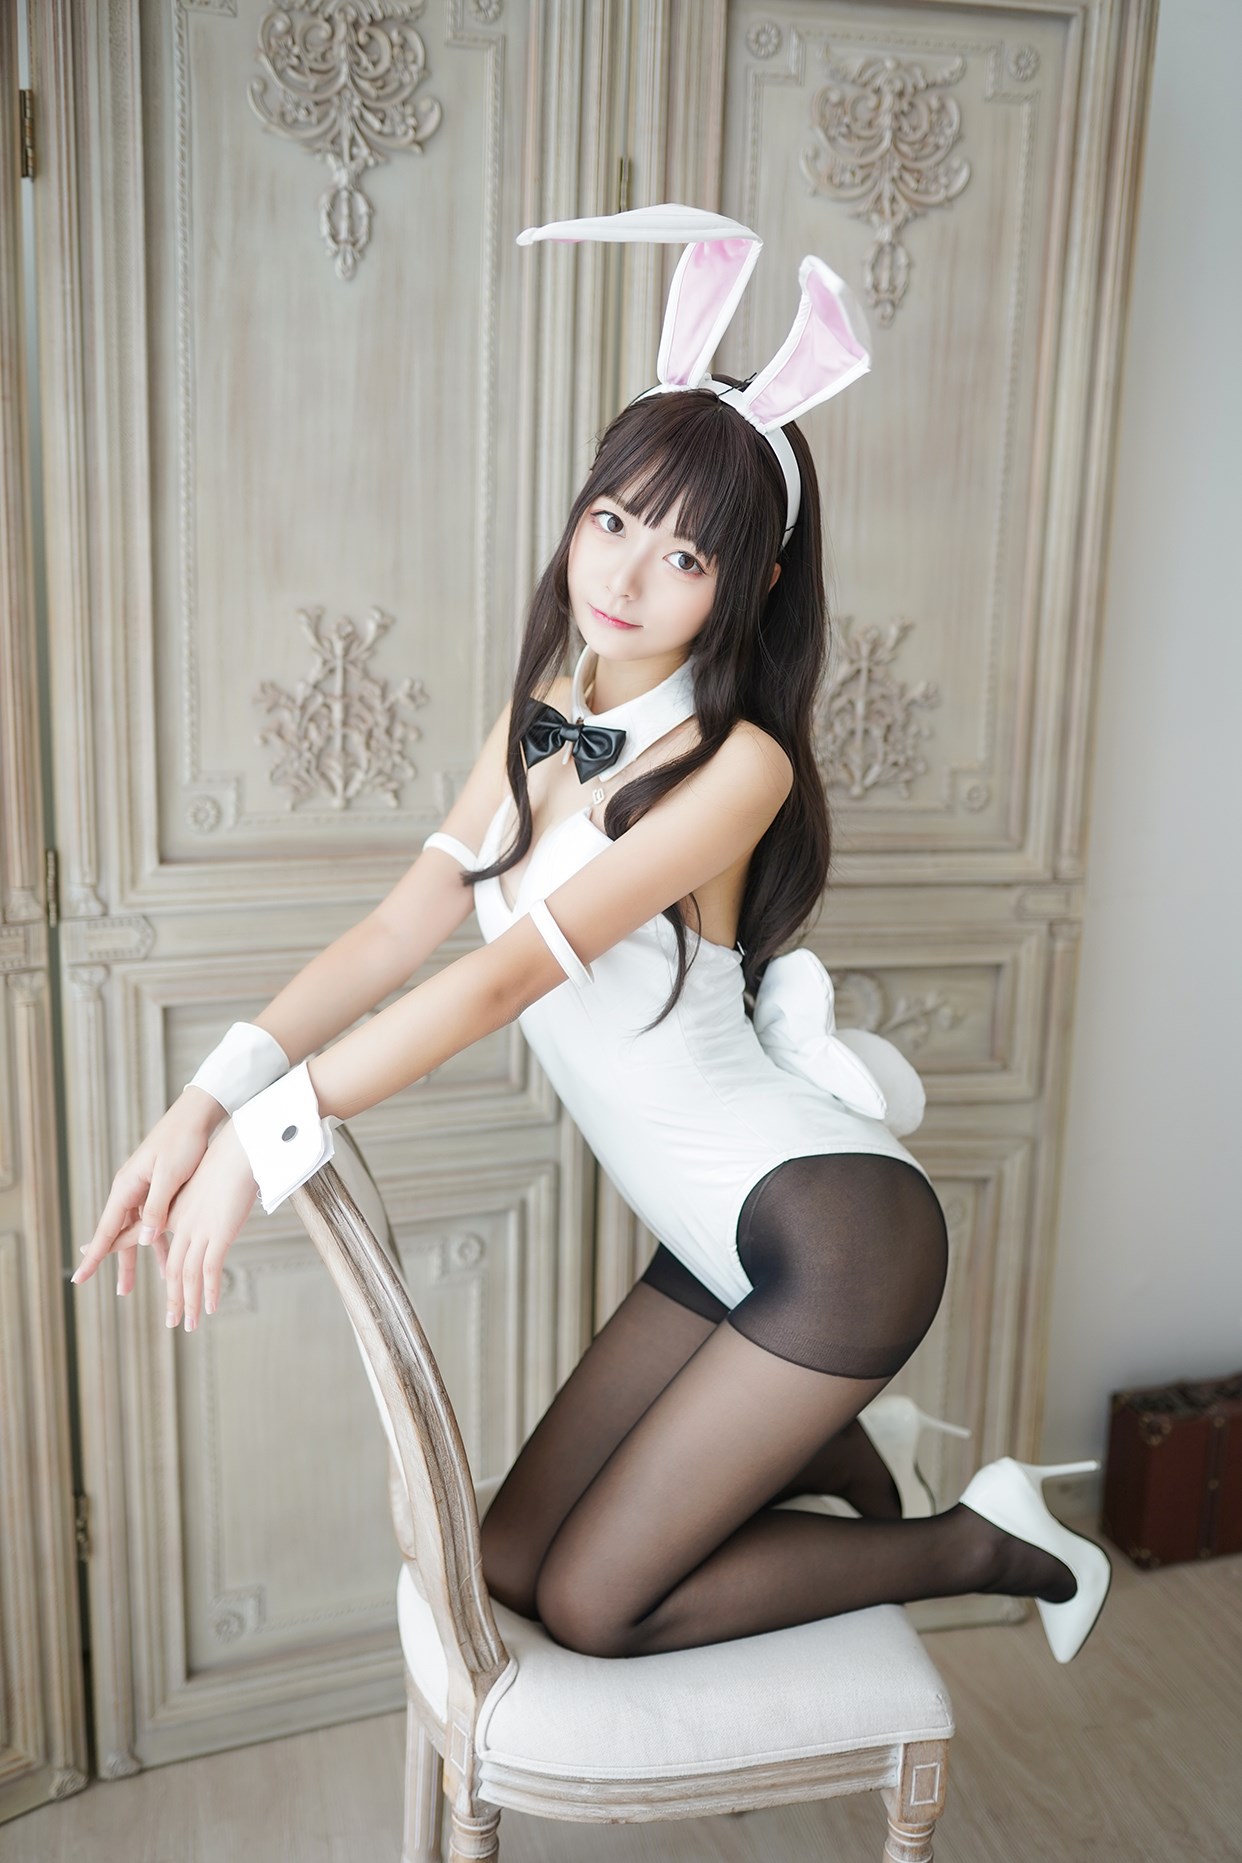 【兔玩映画】兔女郎vol.17-白兔 兔玩映画 第7张